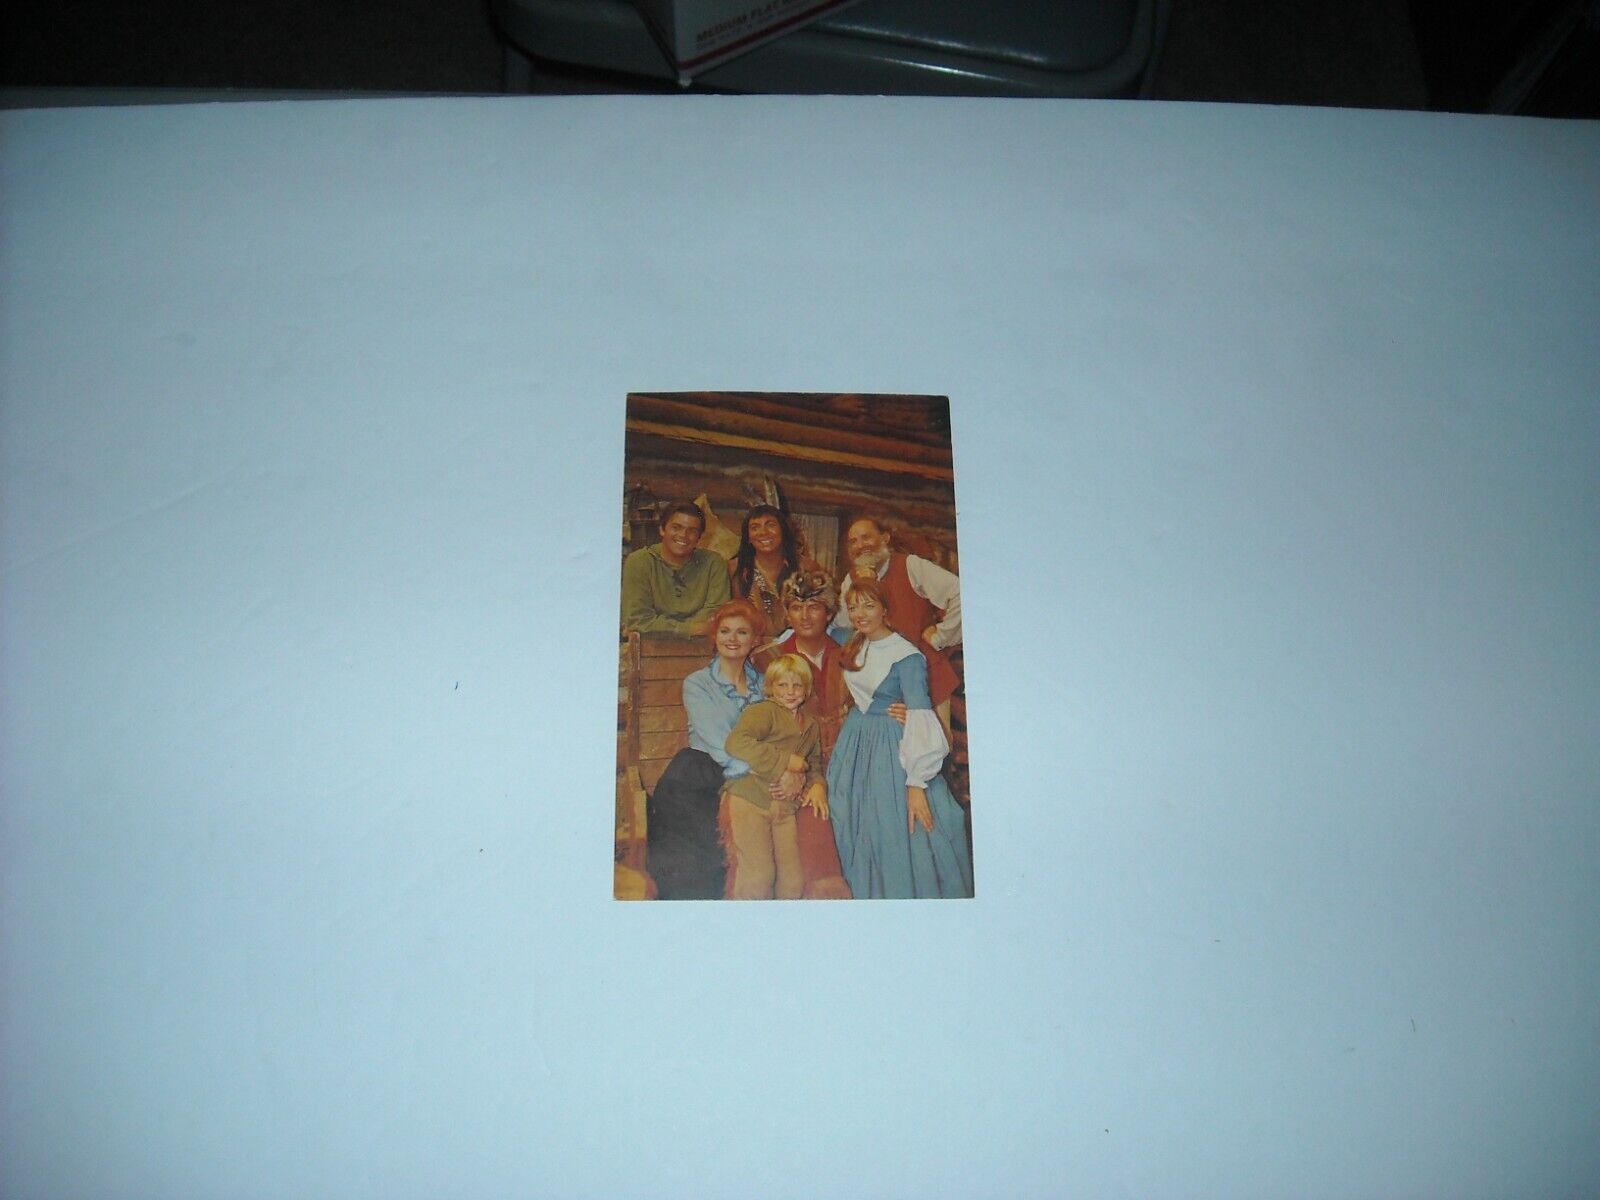 Fess Parker Daniel Boone TV Show Actors Cast Color Photo Postcard size 3.5 x 5.5